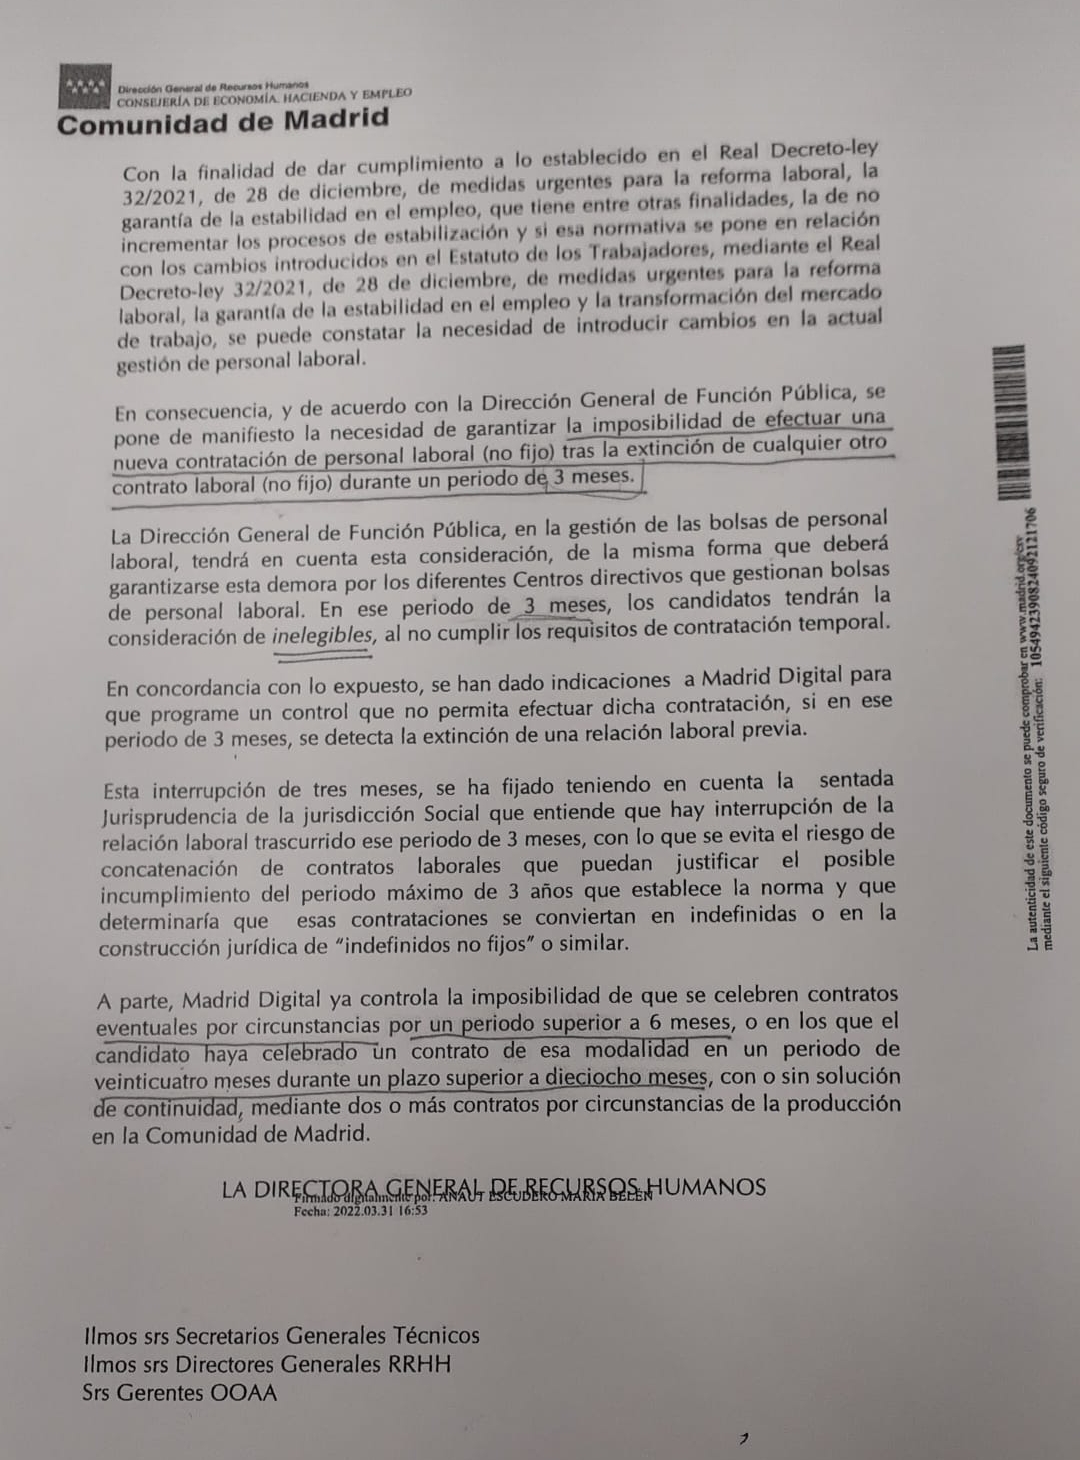 Raul on Twitter: "Madrid ha publicado instrucción por la que se establece la prohibición de personal laboral temporal de bolsa durante los tres meses siguientes a extinción de